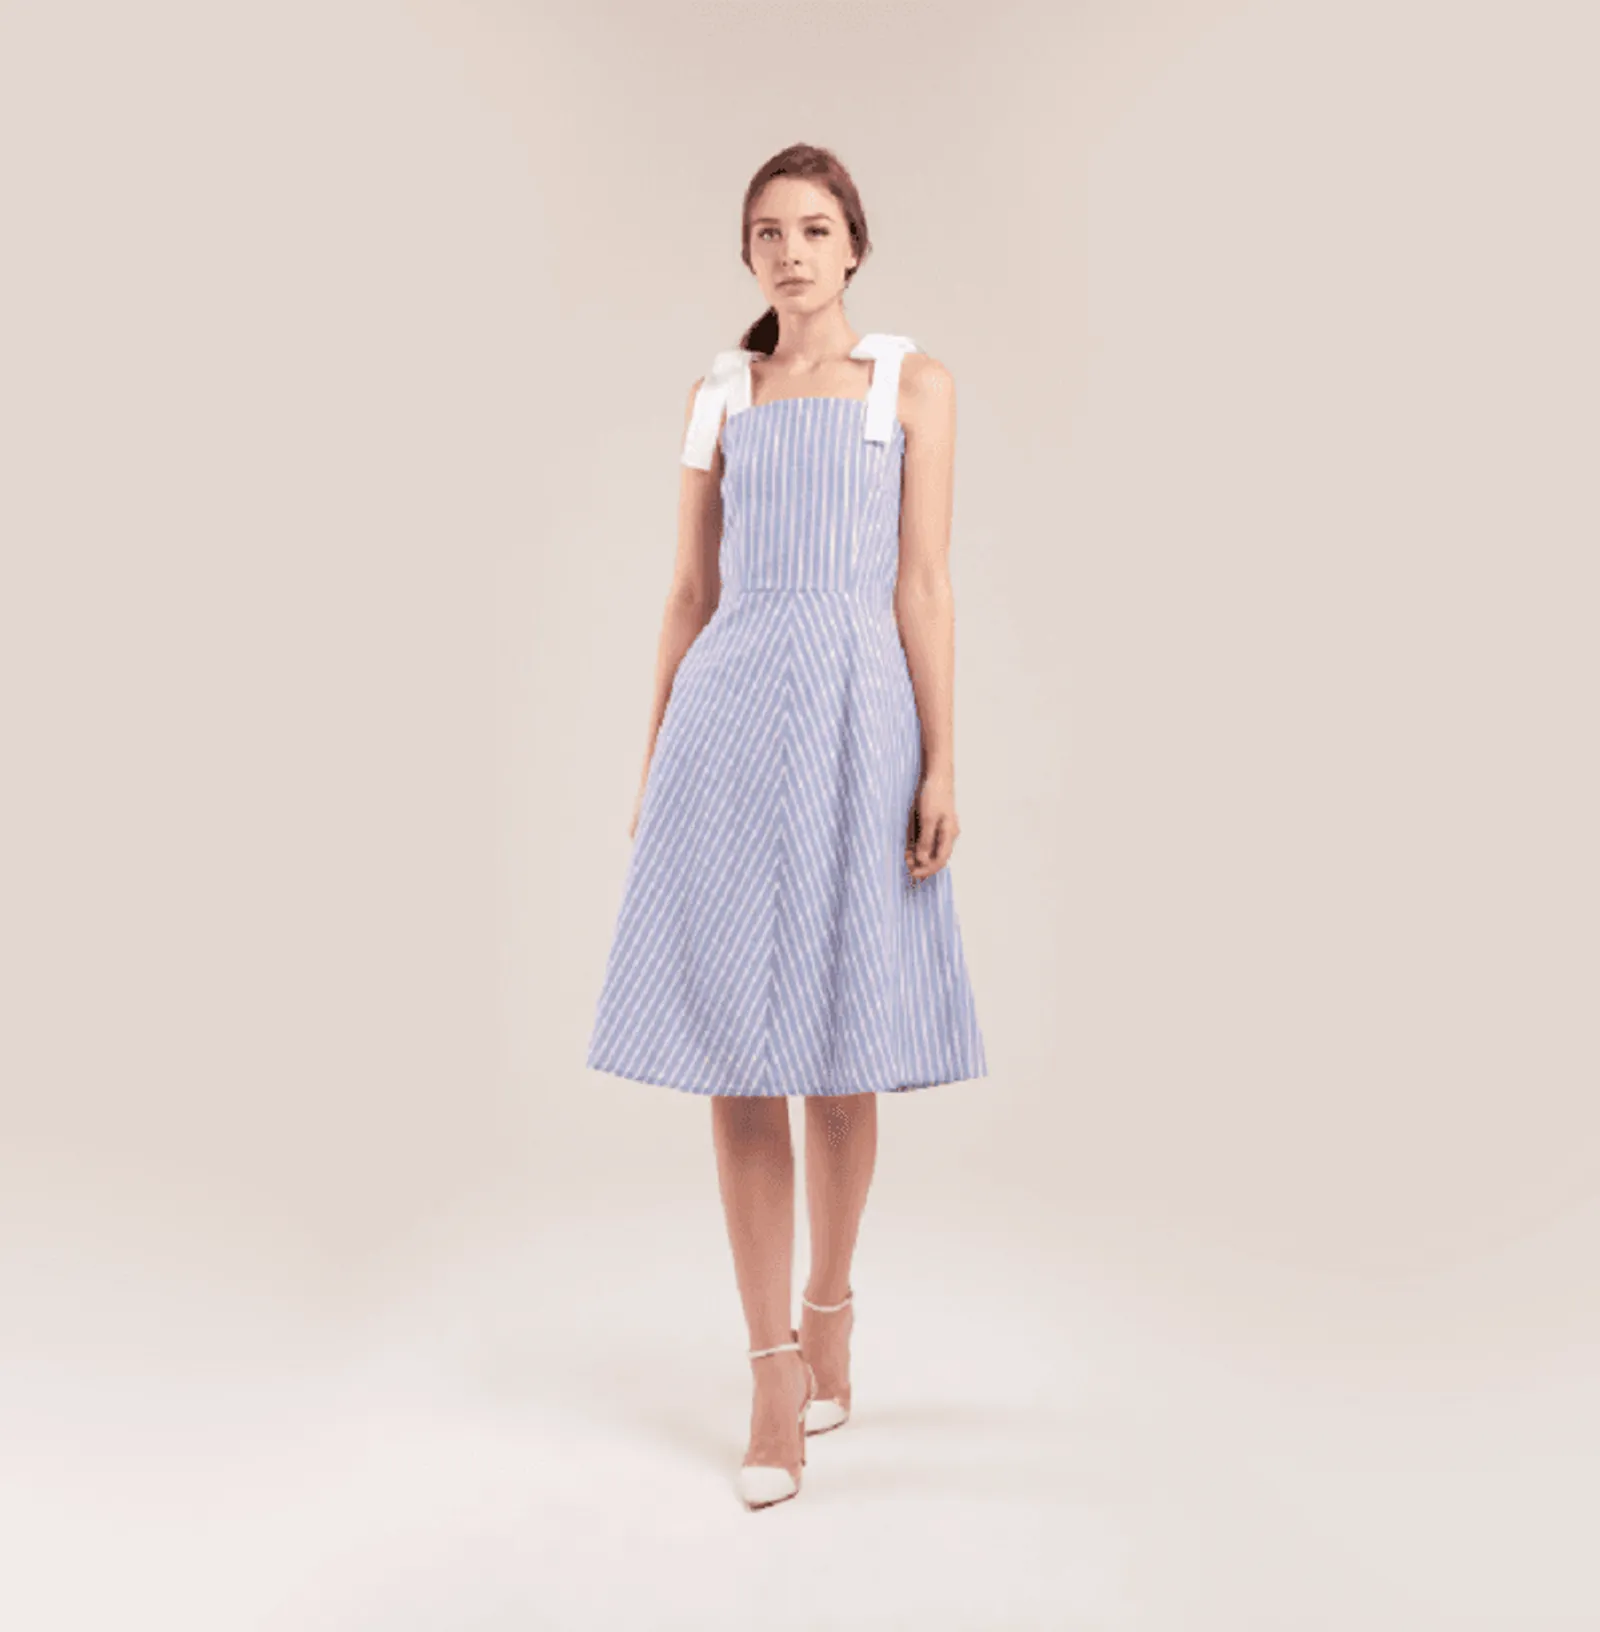 Tampil Trendi saat Kencan, 7 Model Dress Ini Menjadi Pilihan Terbaik